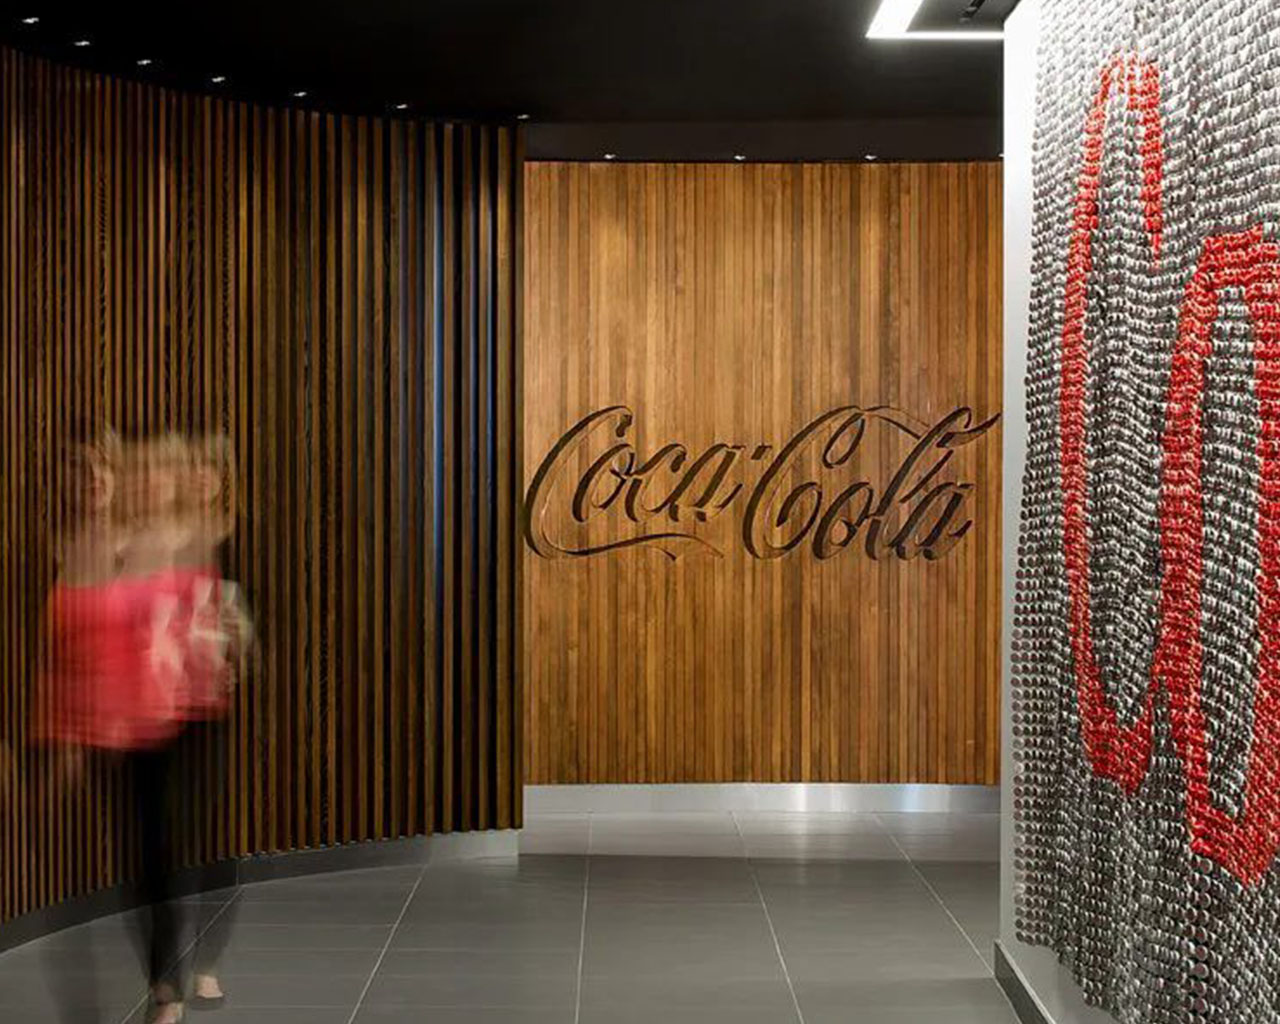 Una mujer rubia caminando dentro de la oficina de Coca-Cola